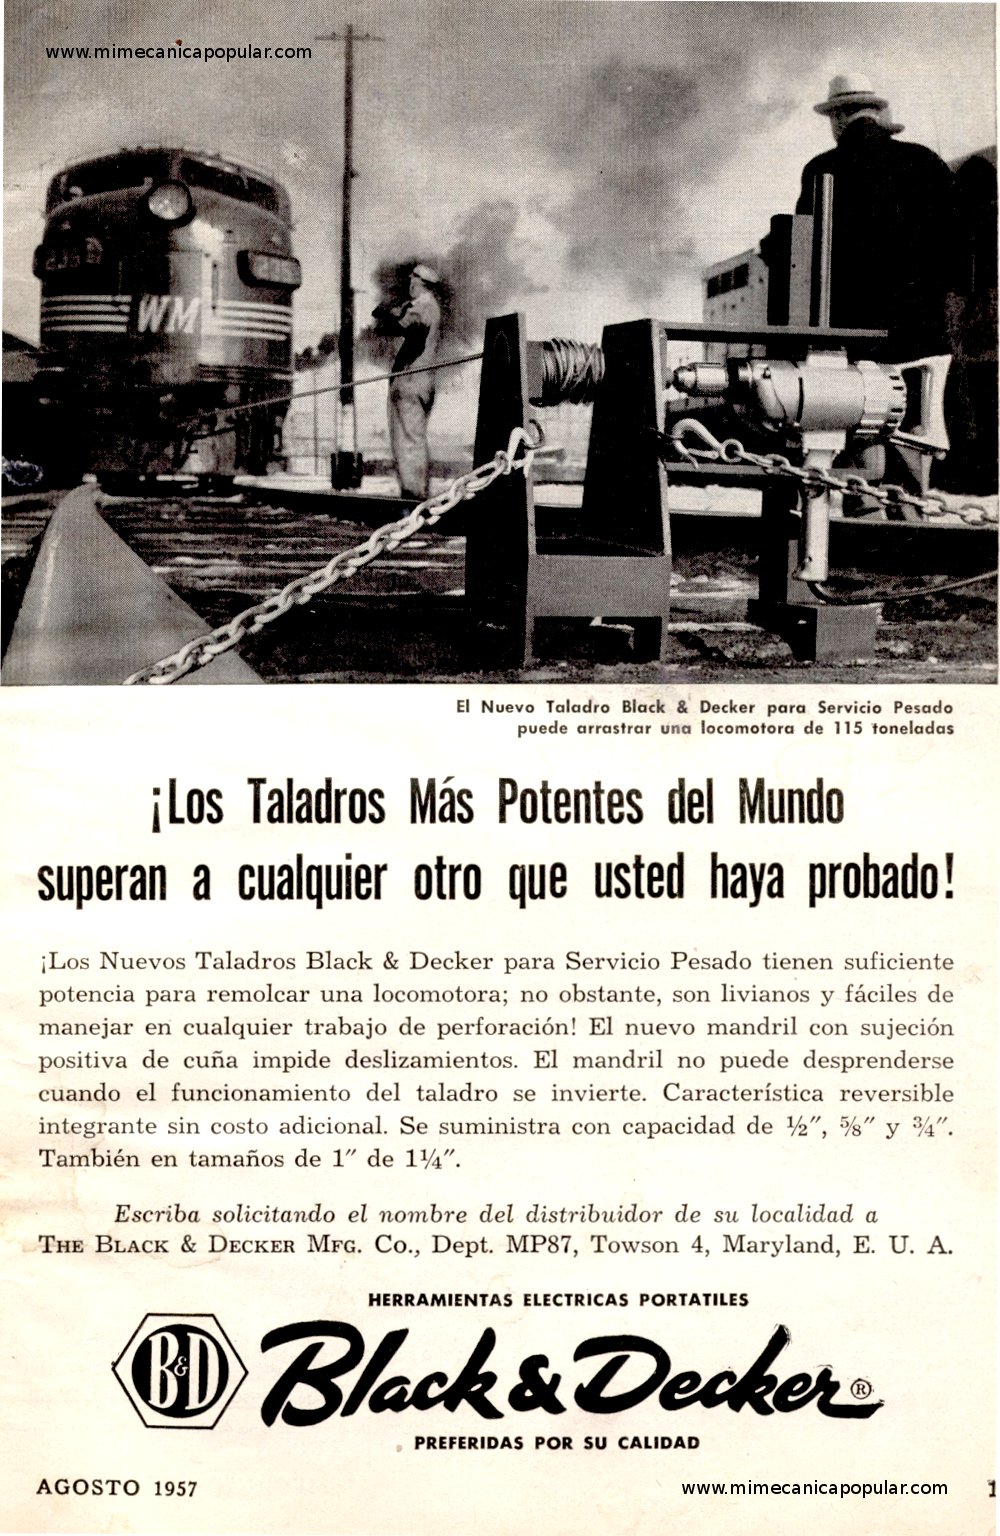 Publicidad - Herramientas Black & Decker - Agosto 1957